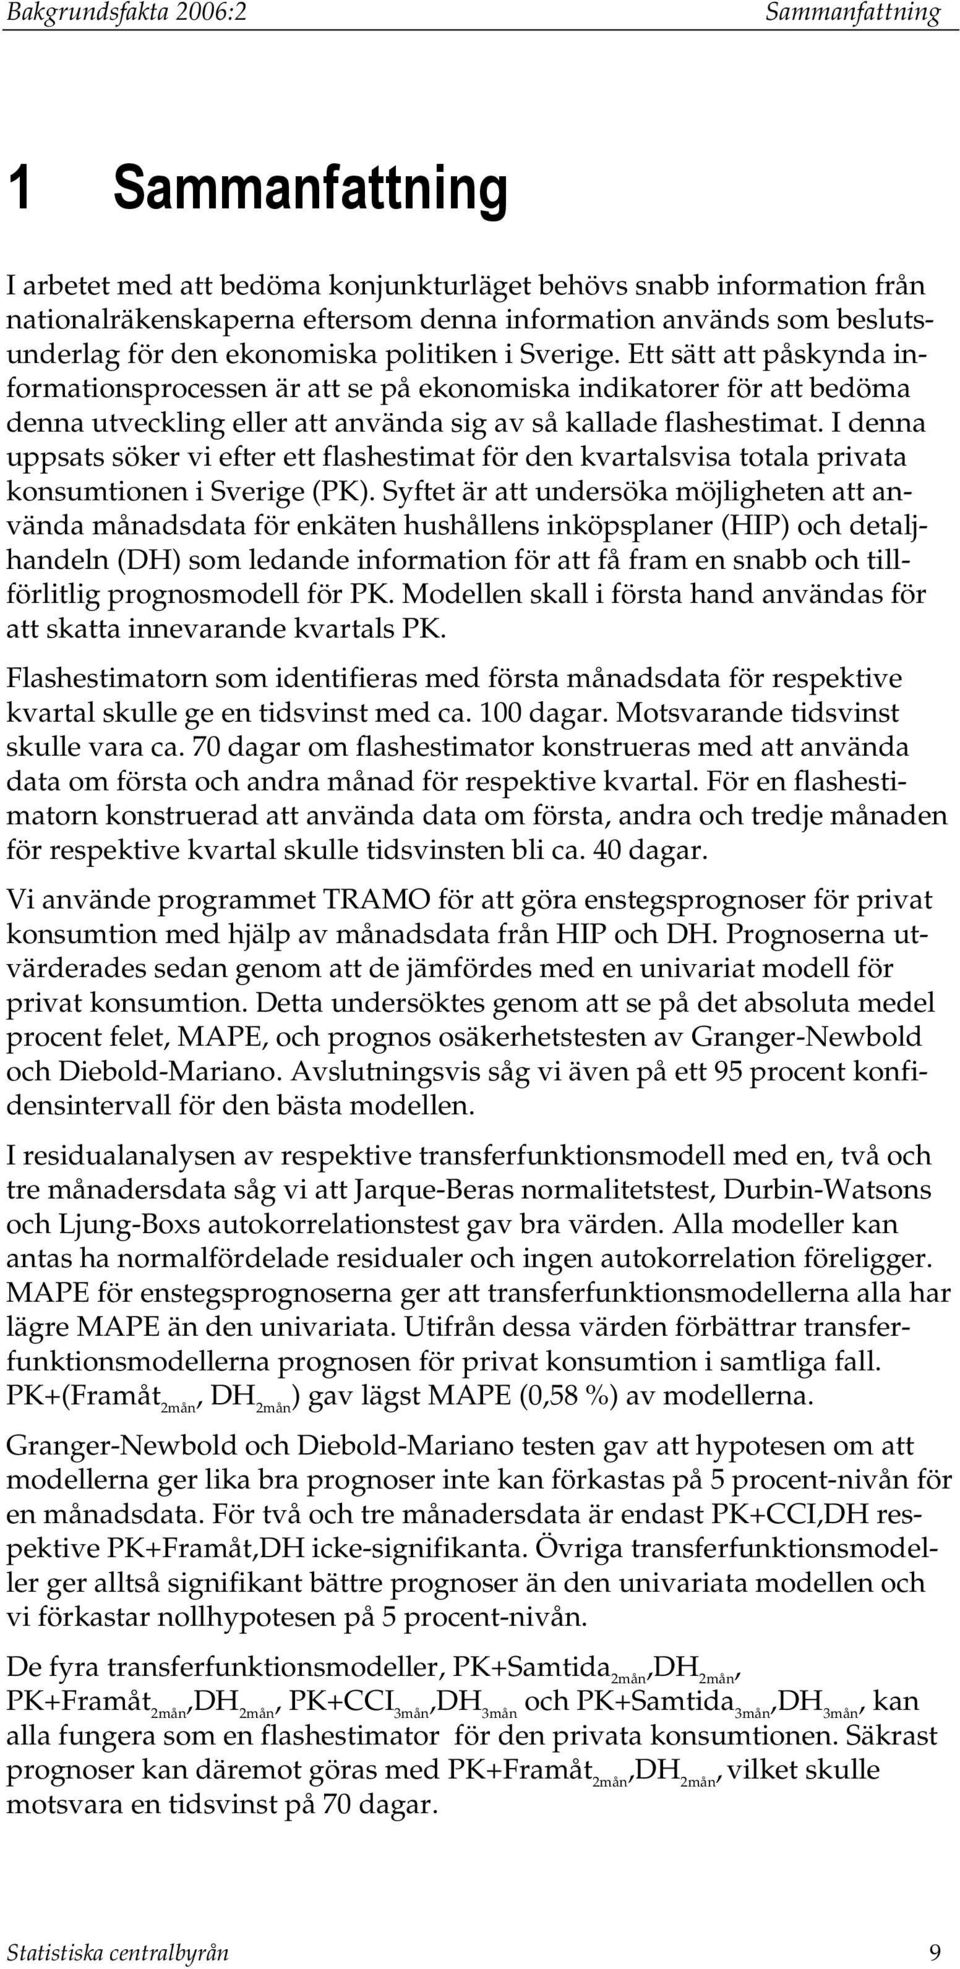 I denna uppsas söker vi efer e flashesima för den kvaralsvisa oala privaa konsumionen i Sverige (PK).